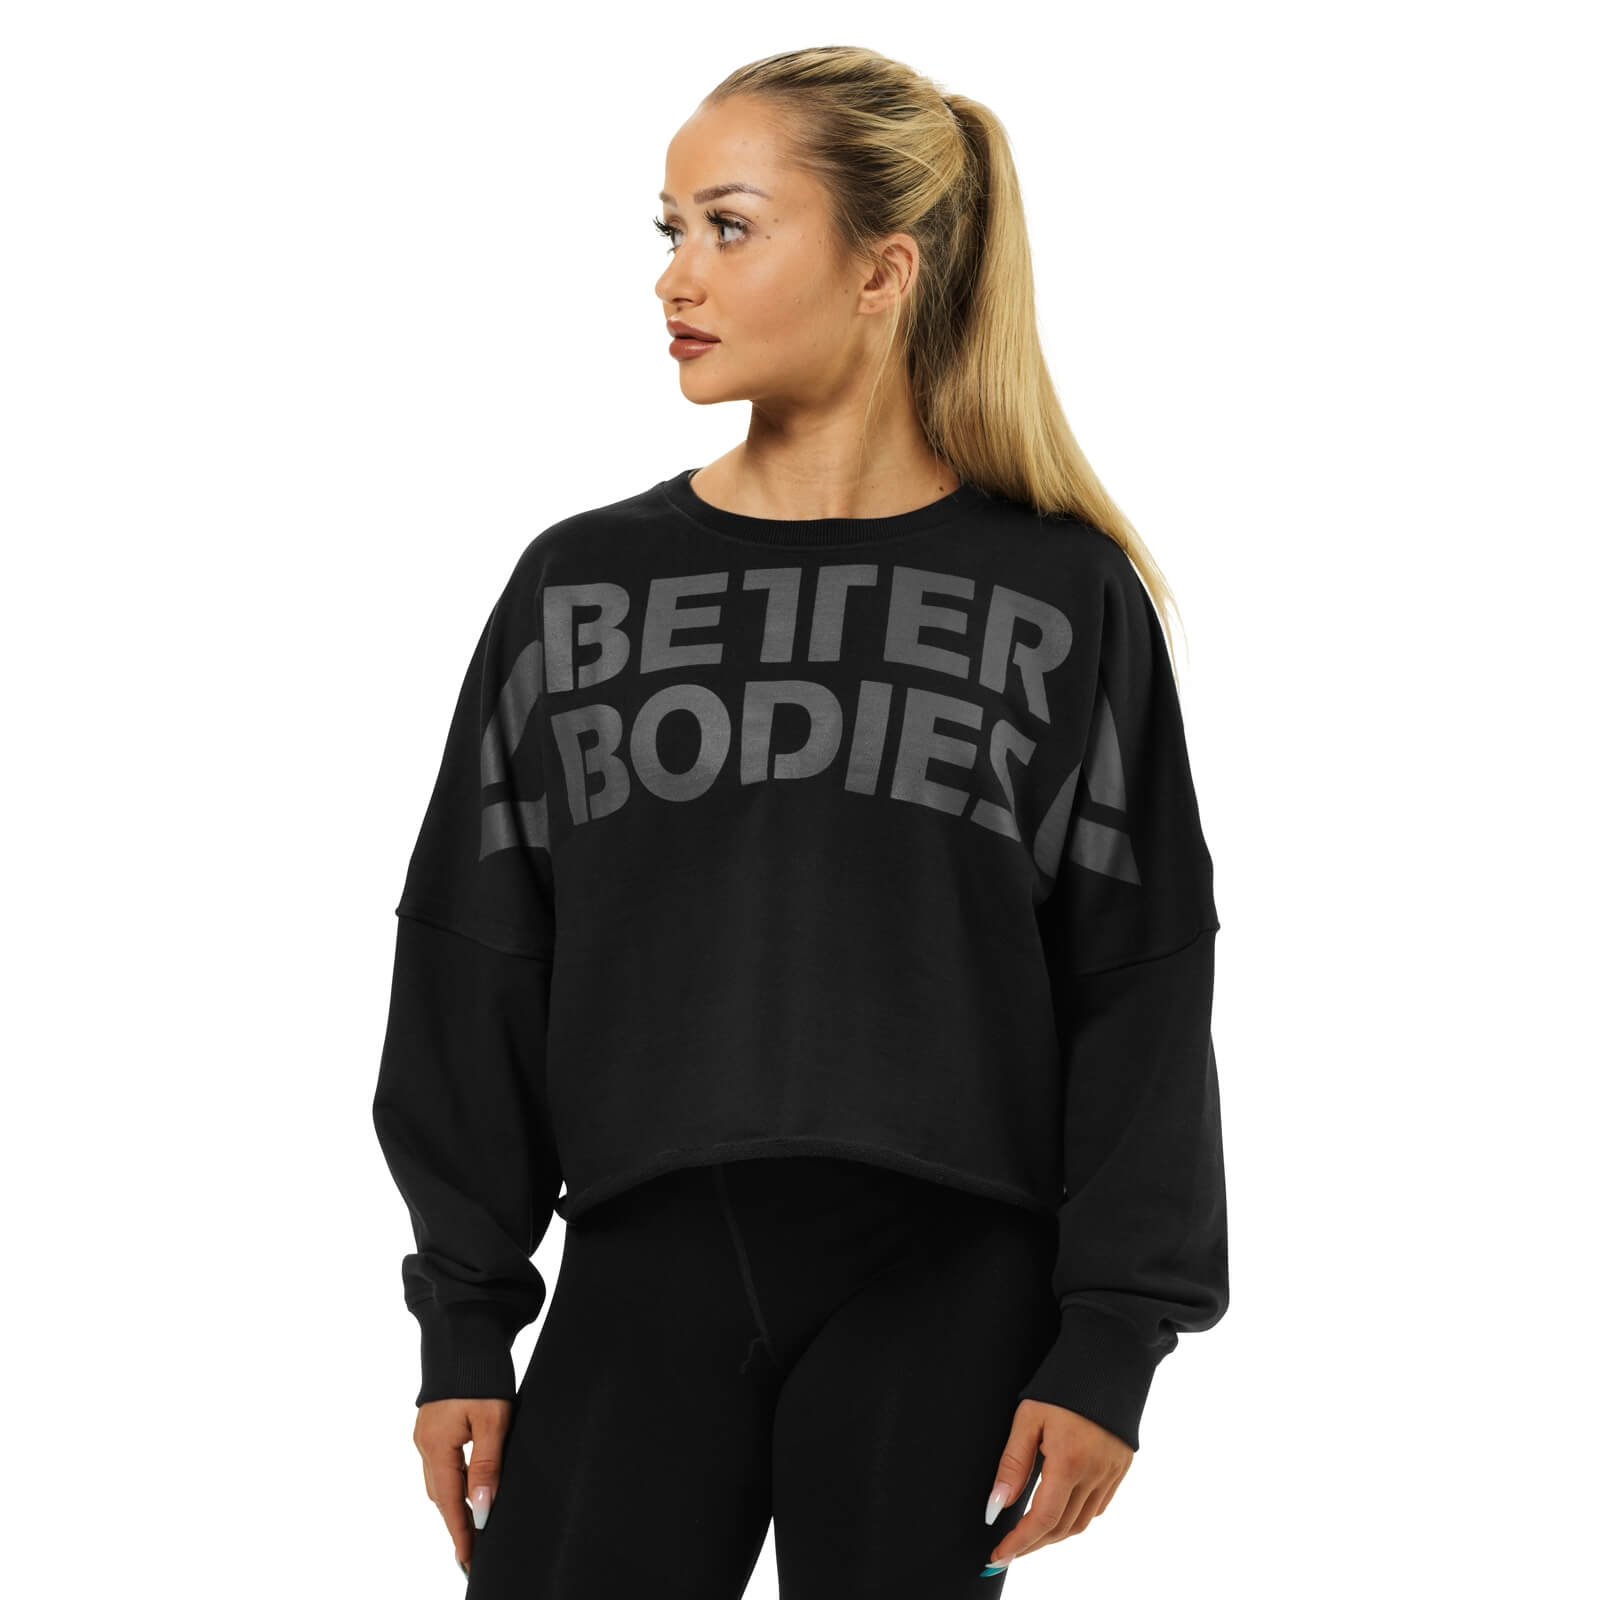 Kolla in Bowery Raw Sweater, black, Better Bodies hos SportGymButiken.se